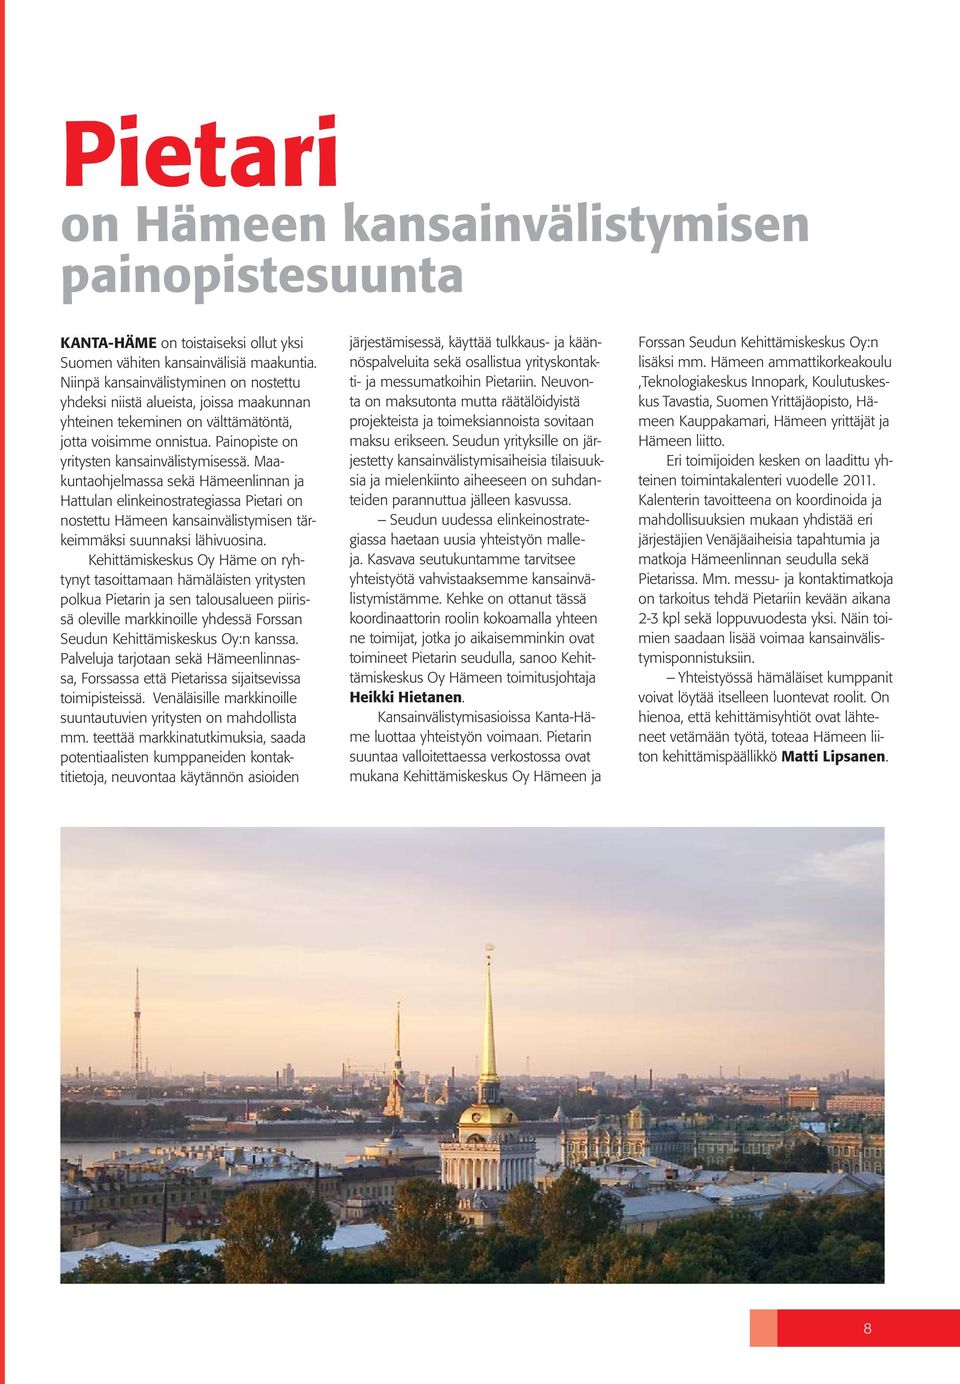 Maakuntaohjelmassa sekä Hämeenlinnan ja Hattulan elinkeinostrategiassa Pietari on nostettu Hämeen kansainvälistymisen tärkeimmäksi suunnaksi lähivuosina.